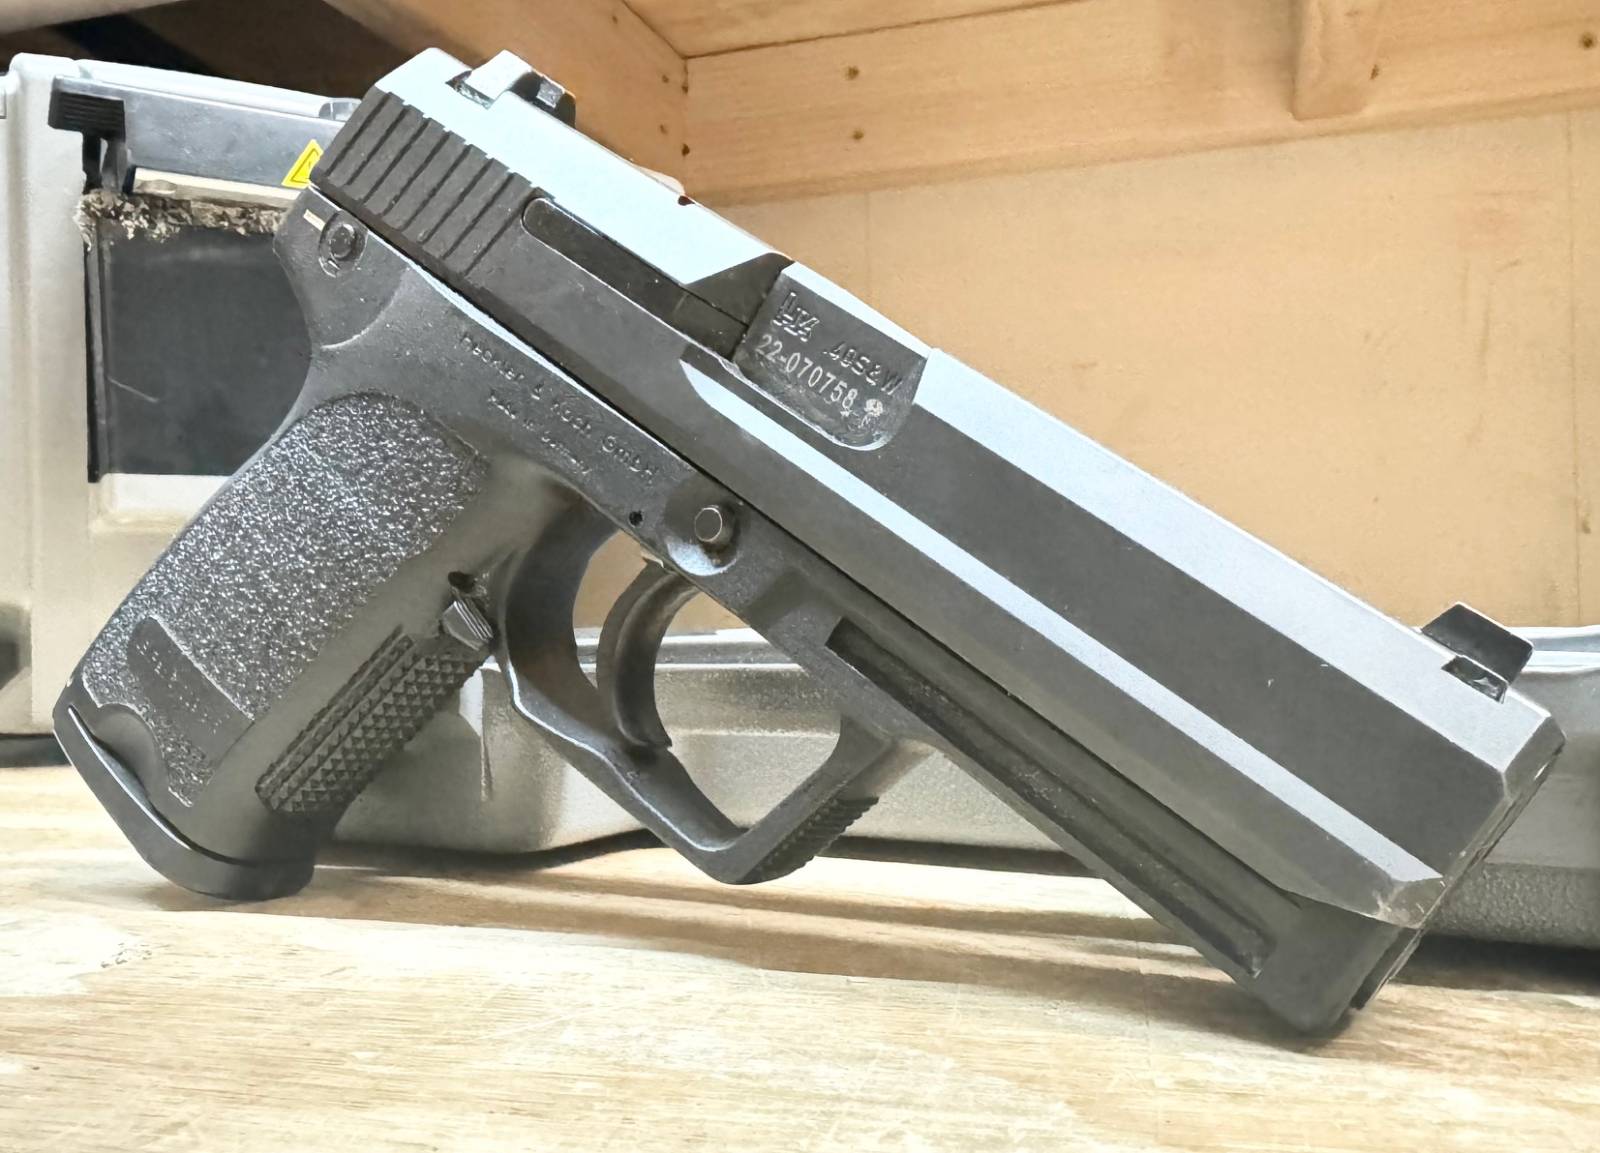 HK USP V1 40 S&W Pistol 4.25 Black - Made in Germany-img-1